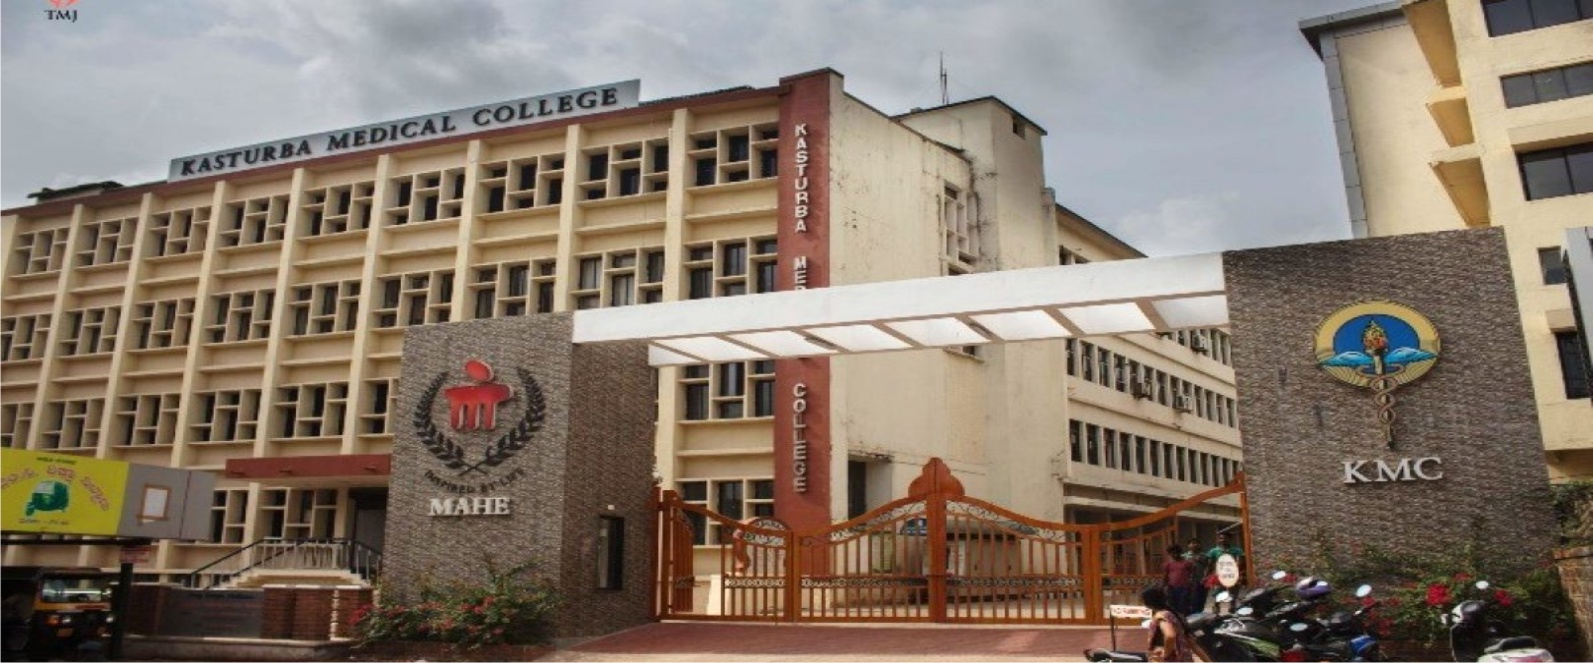 Kasturba Medical College (KMC) - Mangalore